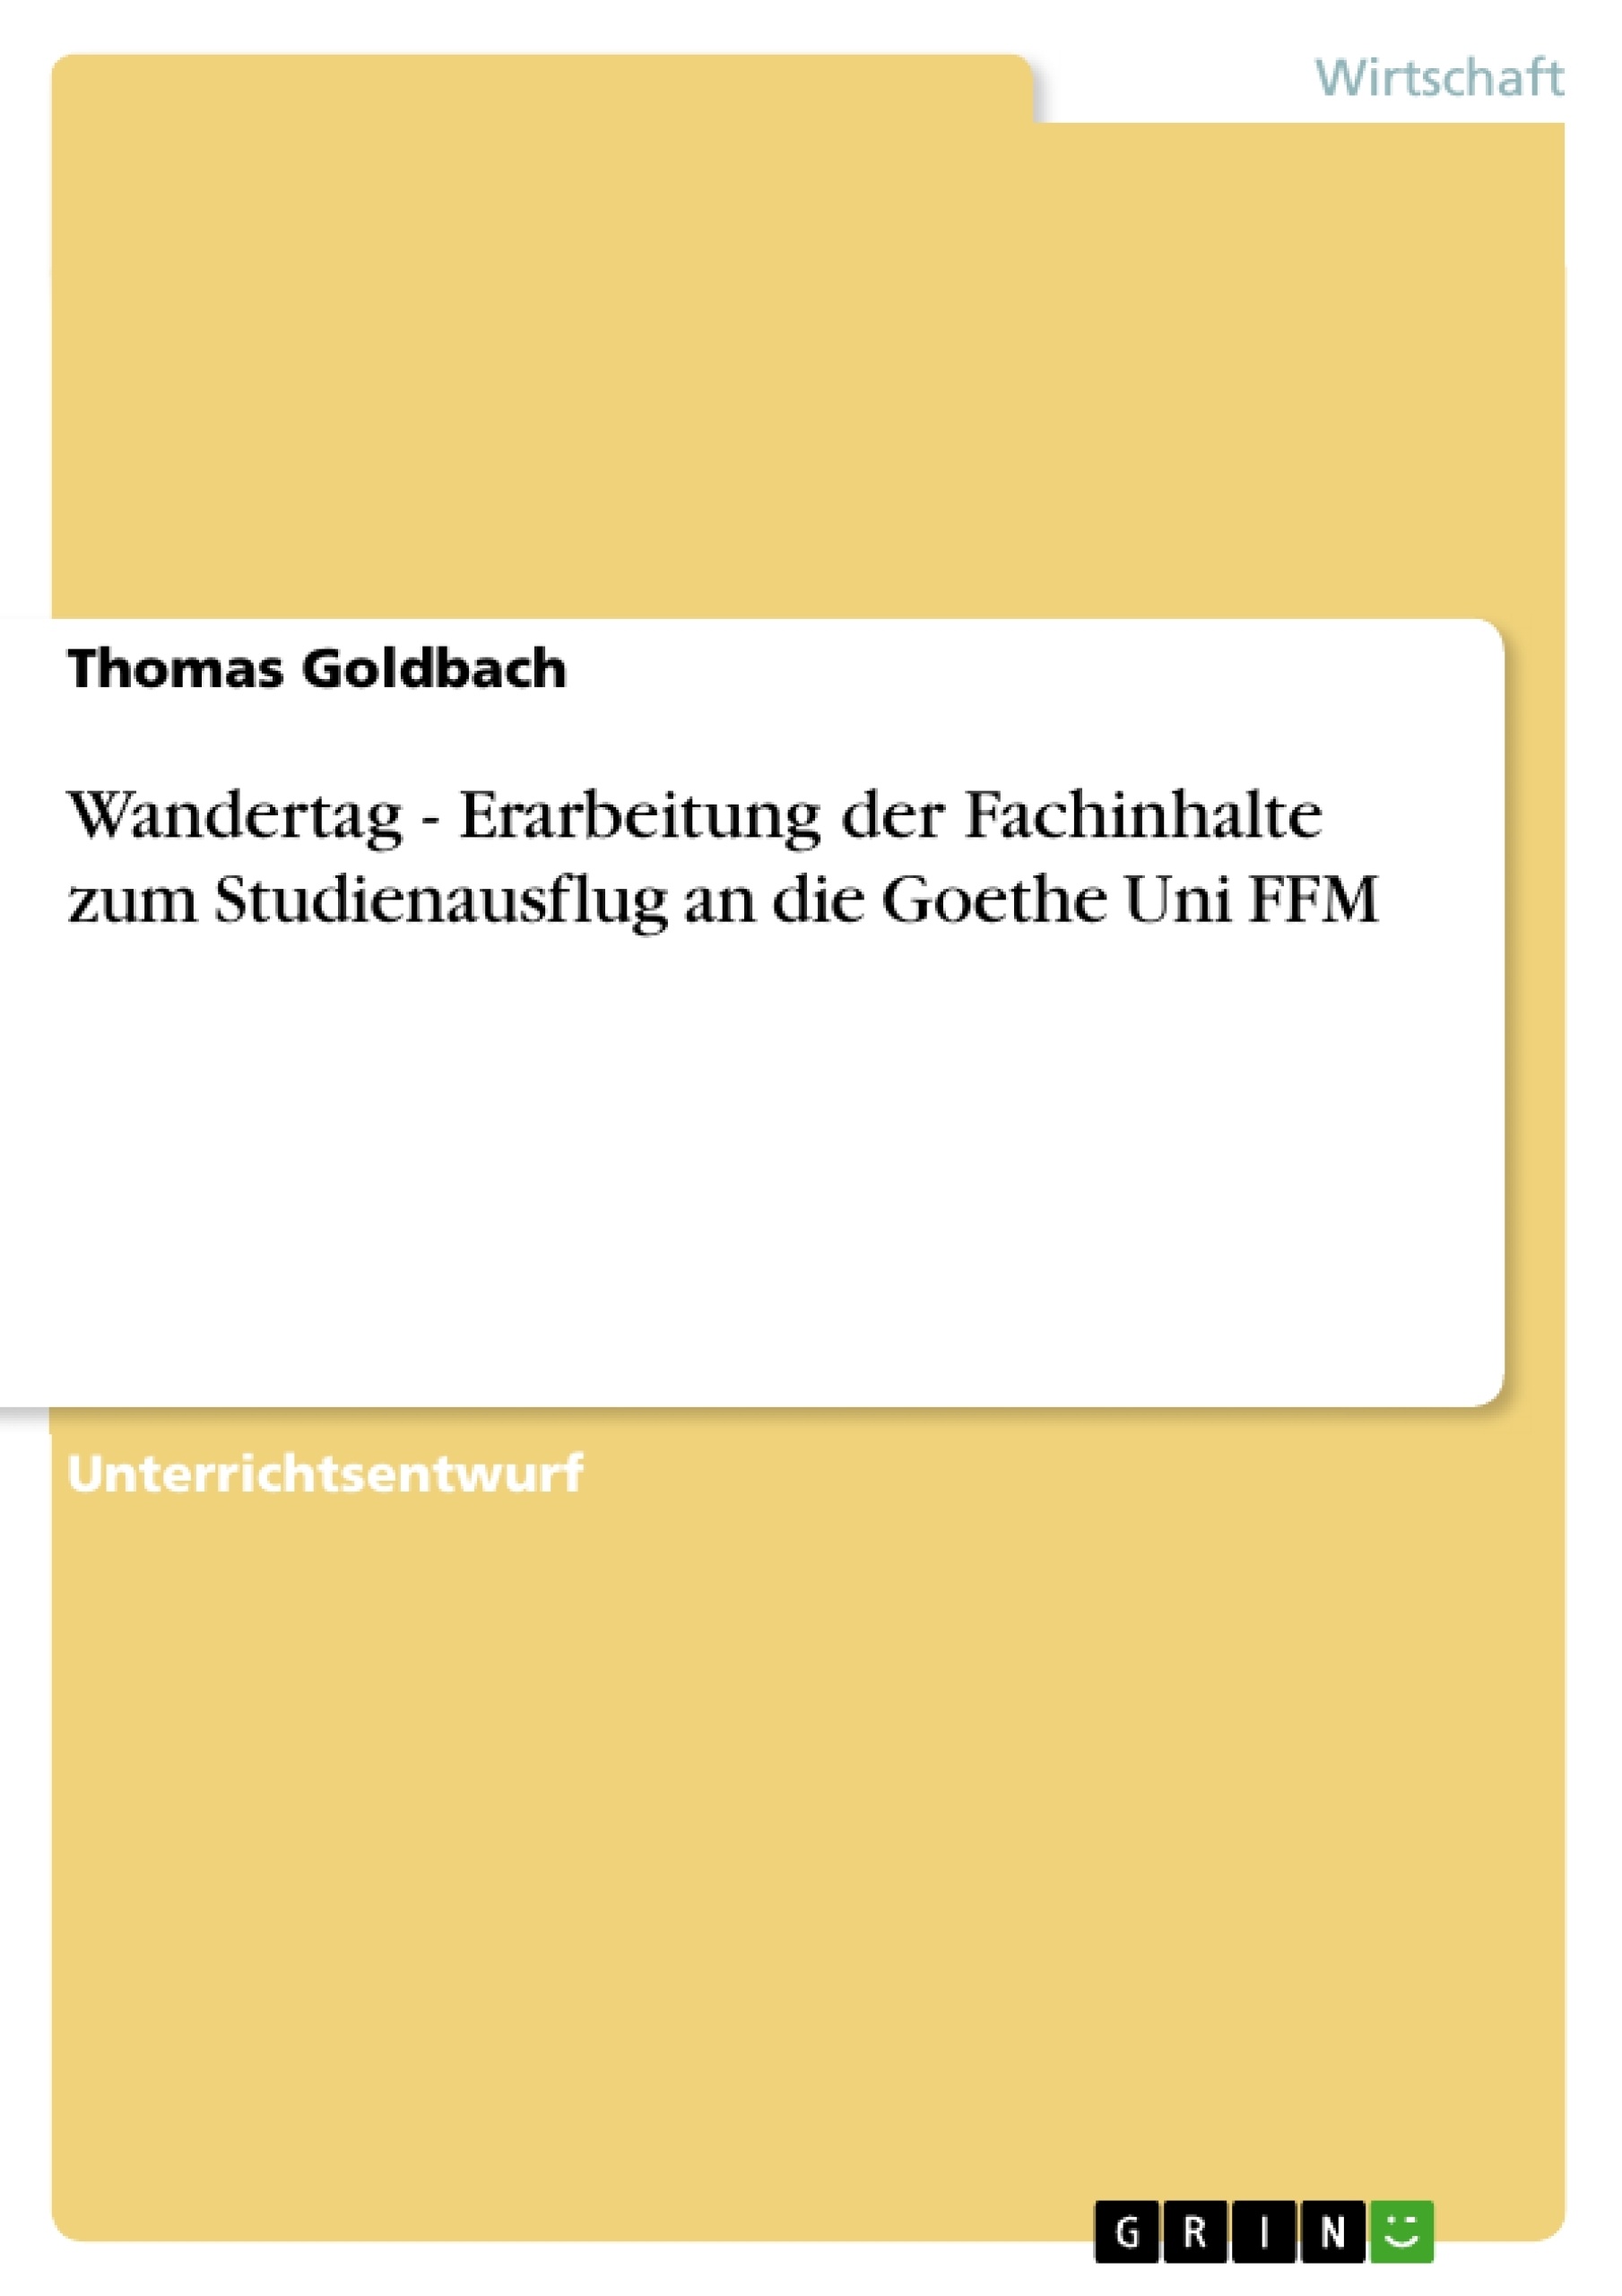 Titel: Wandertag - Erarbeitung der Fachinhalte zum Studienausflug an die Goethe Uni FFM